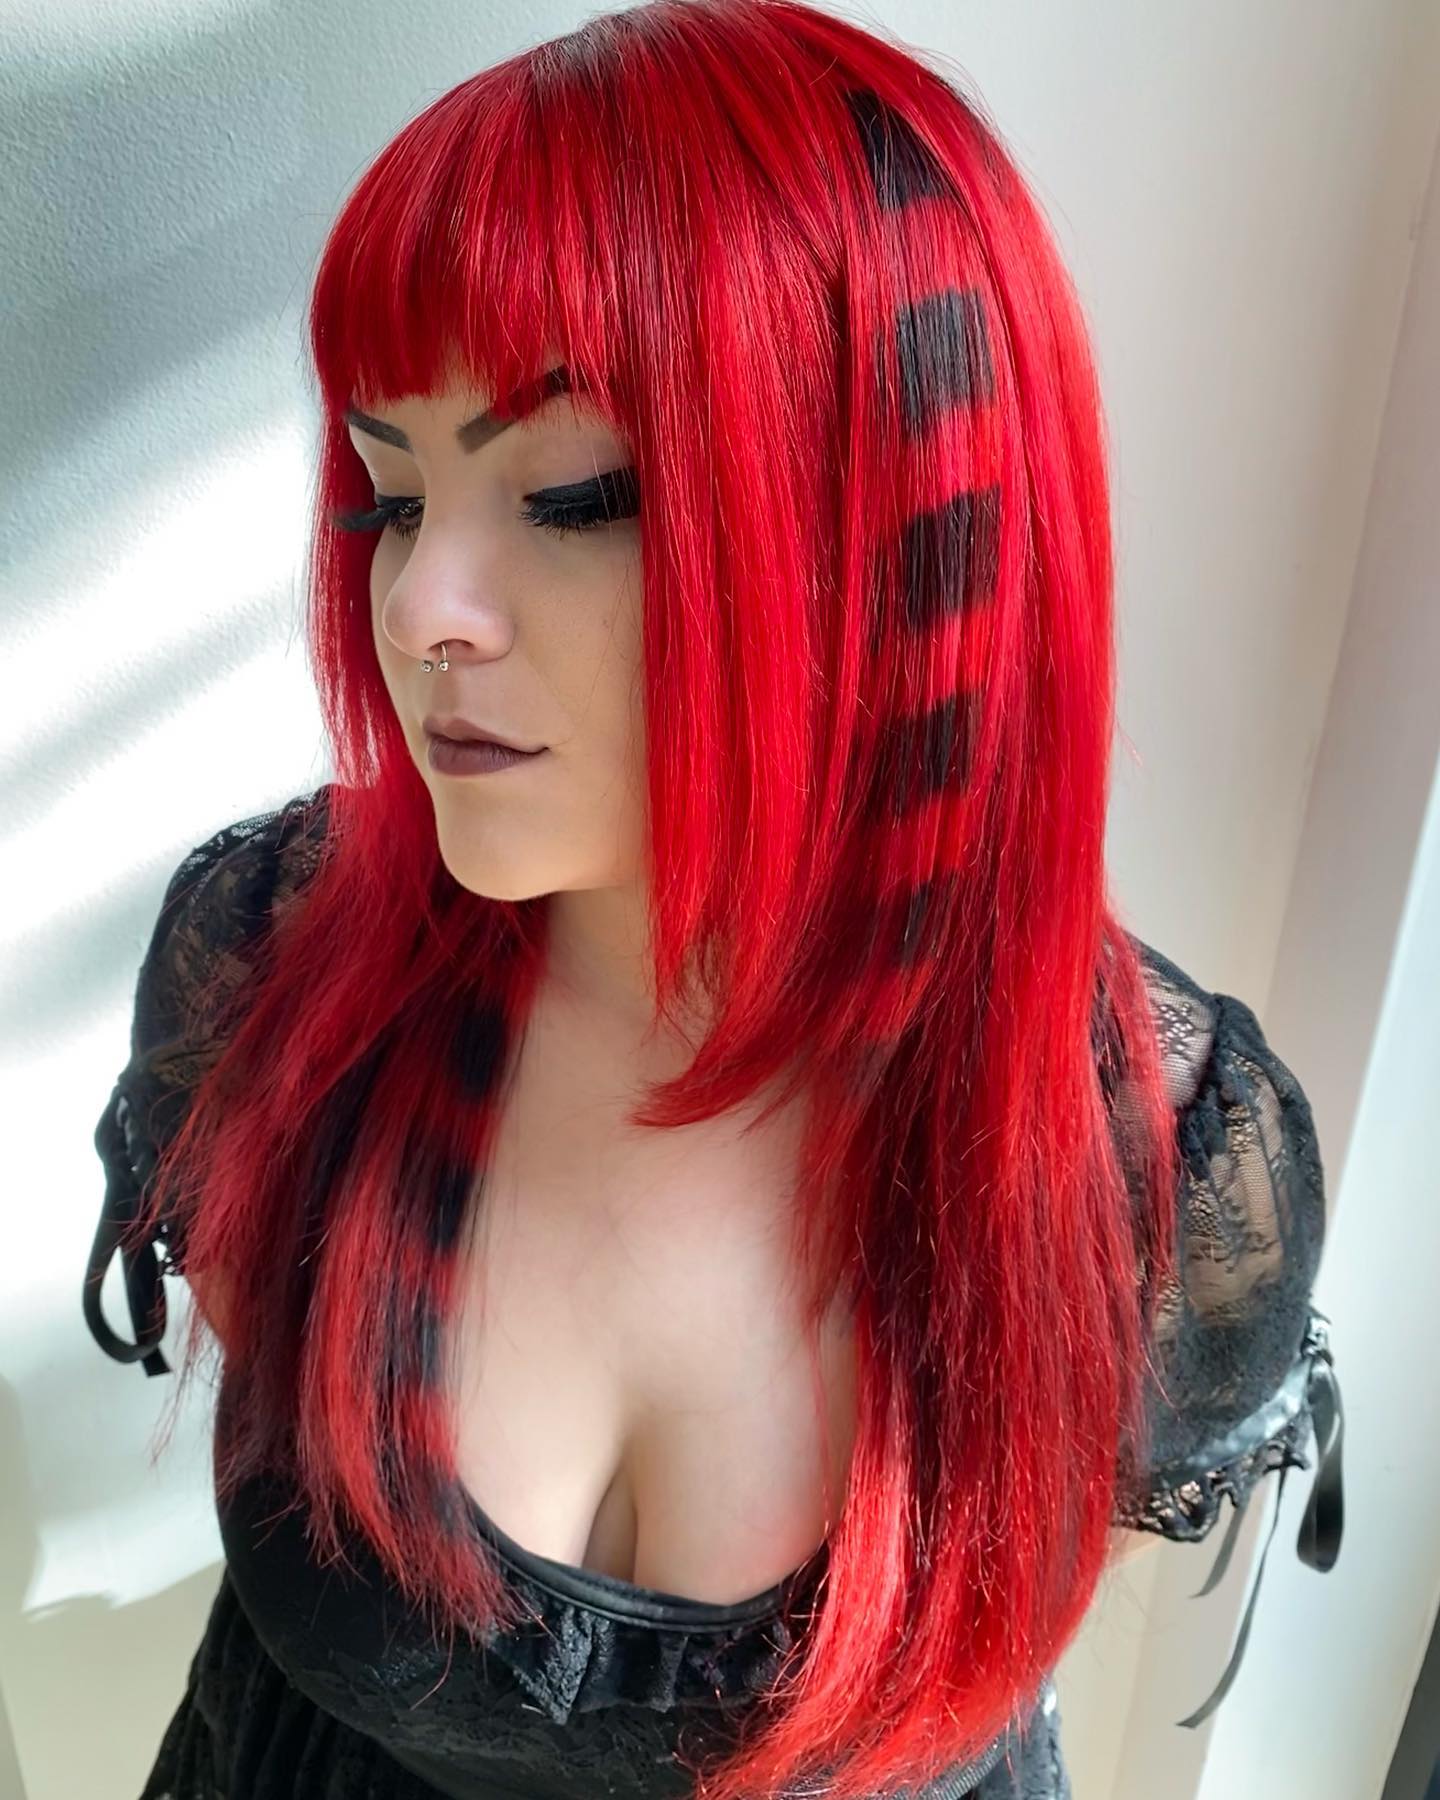 cheveux roux avec des motifs noirs